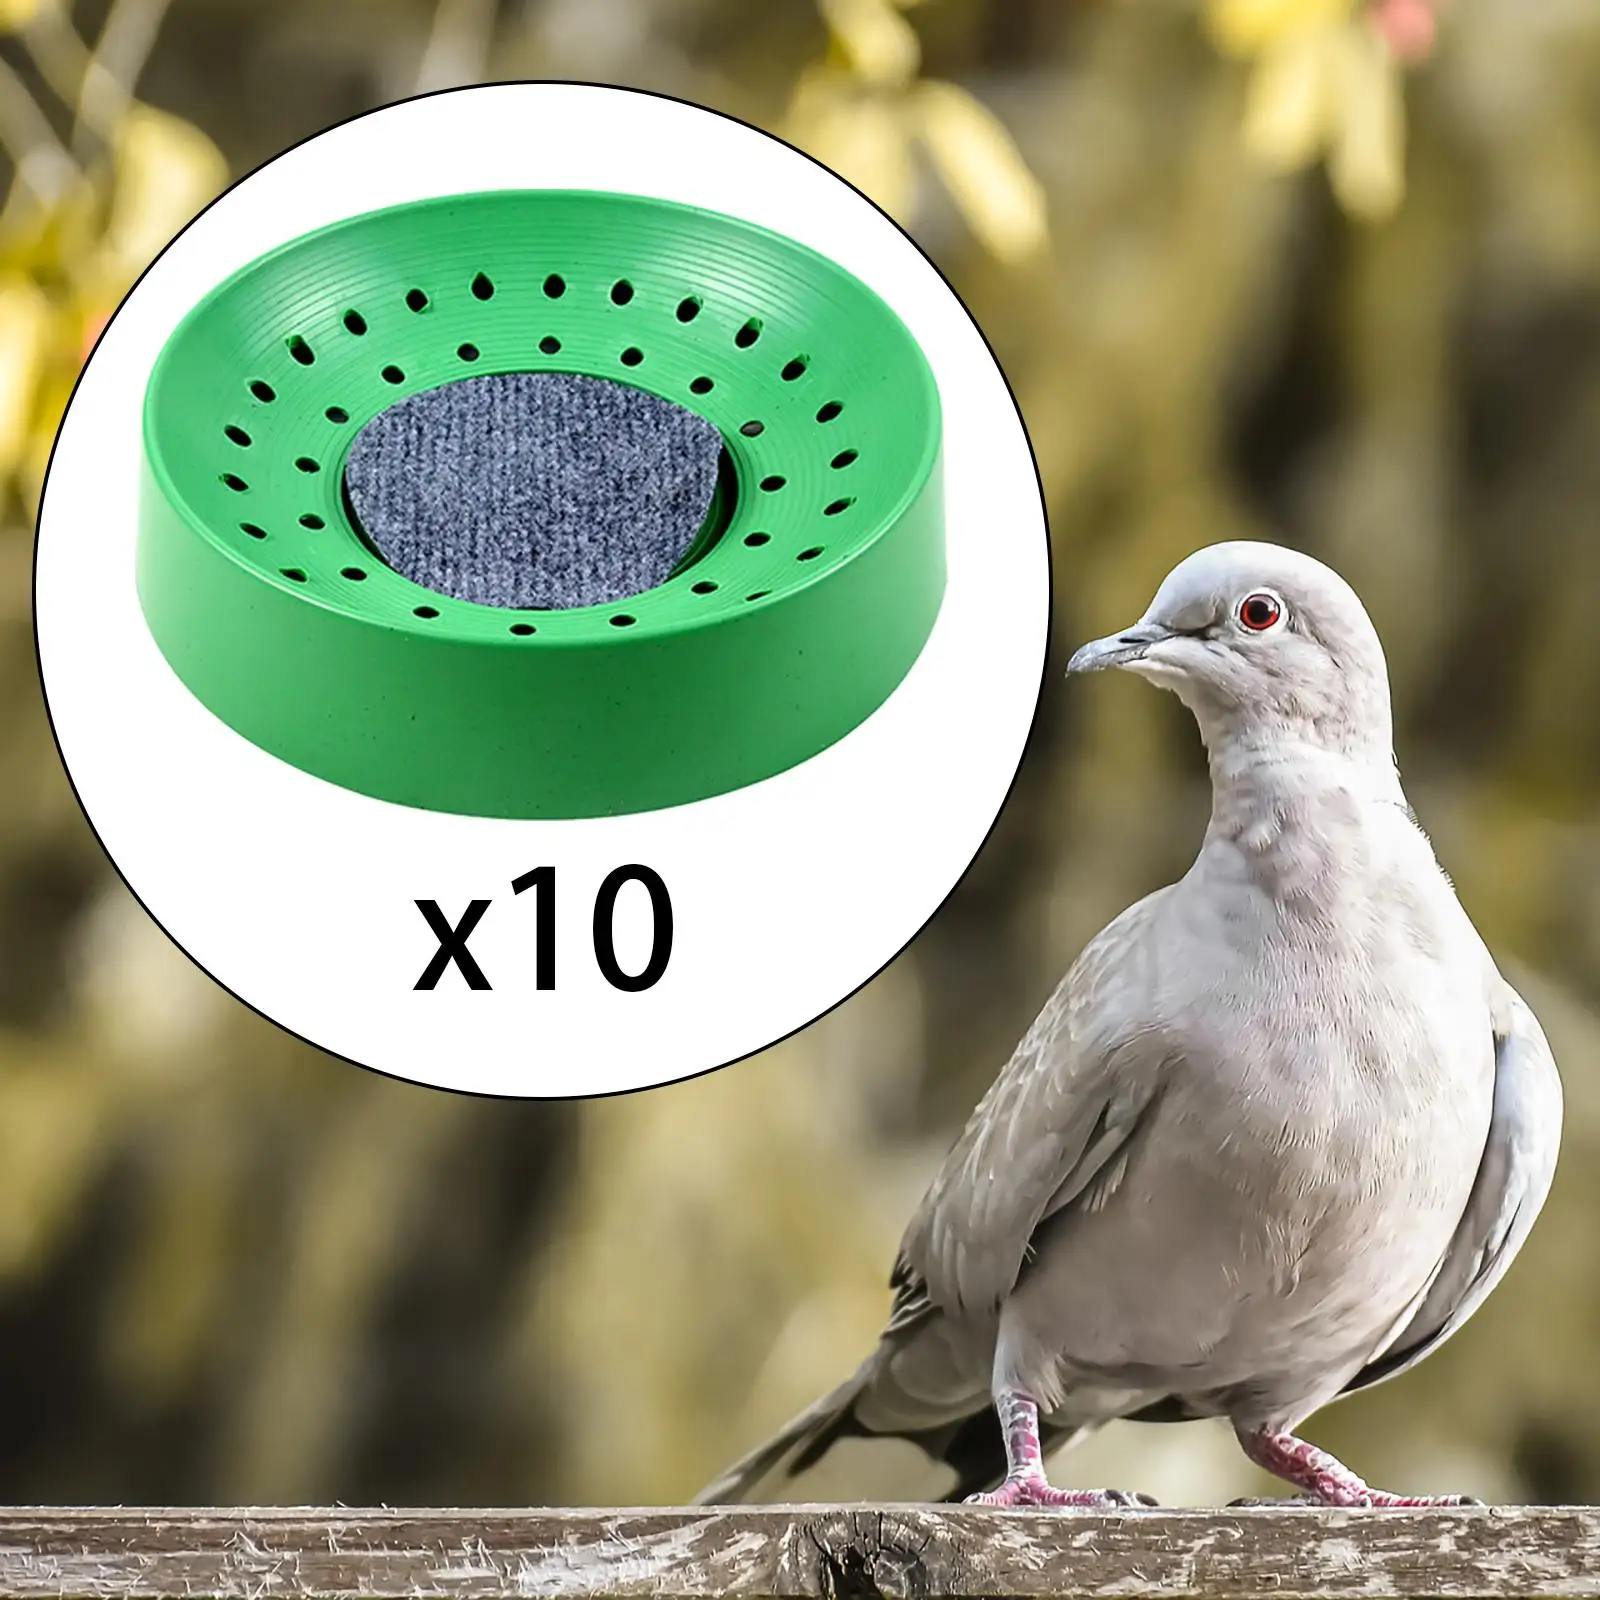 10Pcs Pigeon Nest Bird Egg Nest Pet Bird Supplies Bird Nesting Bowls for Pigeons